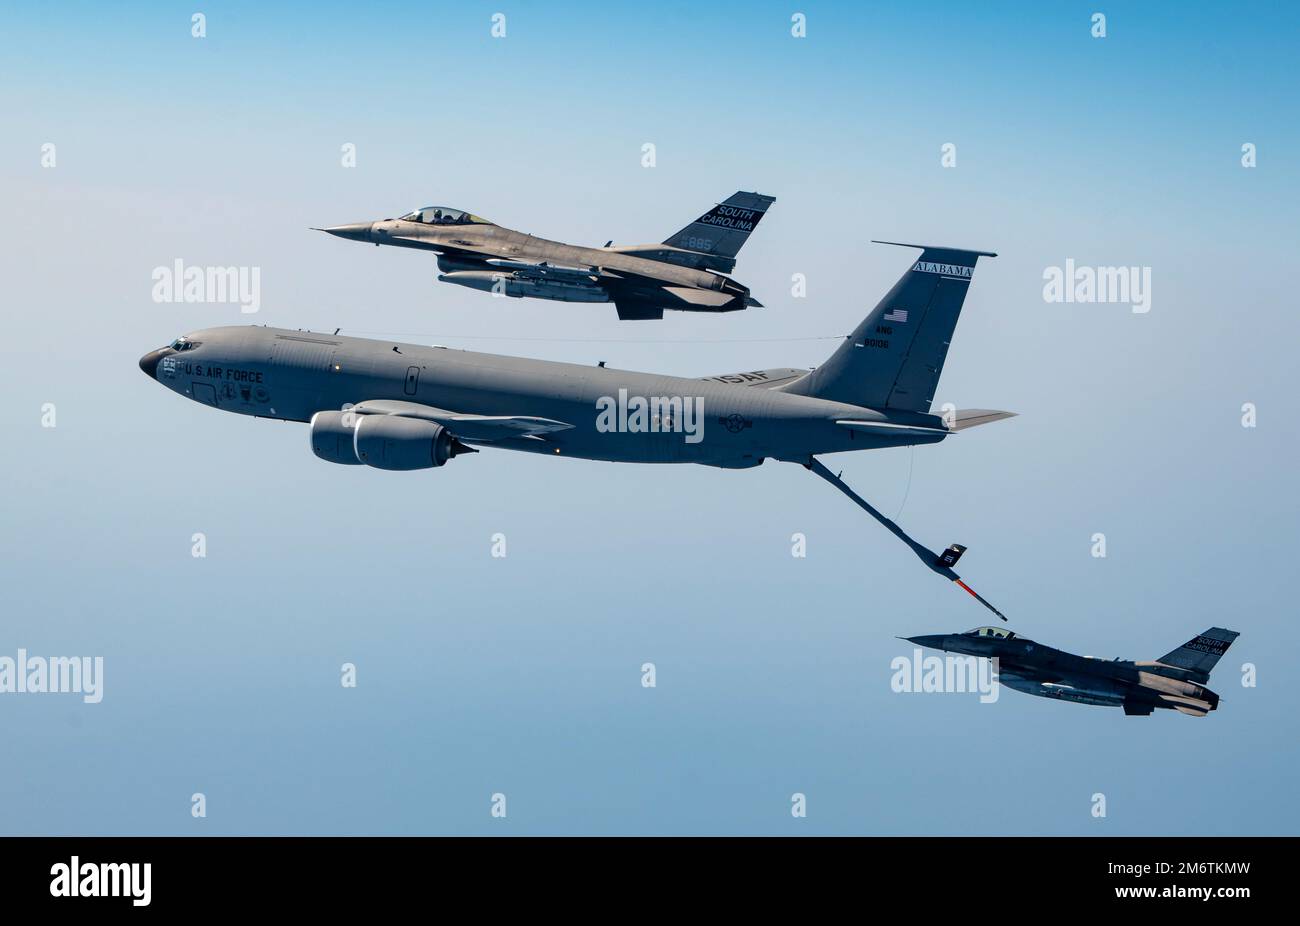 ÉTATS-UNIS La Force aérienne F-16 Faucon de combat affecté à la Garde nationale aérienne de Caroline du Sud avec un KC-135 Stratotanker affecté à l'ANG de l'Alabama pour le ravitaillement aérien pendant l'Sentry Savannah 22-1, 5 mai 2022. Sentry Savannah, un exercice de formation sur les menaces de l'ANG, a amené plus de 60 avions de l'unité active, de l'ANG et de la Réserve aérienne au Centre de domination aérienne pour l'exercice. Banque D'Images